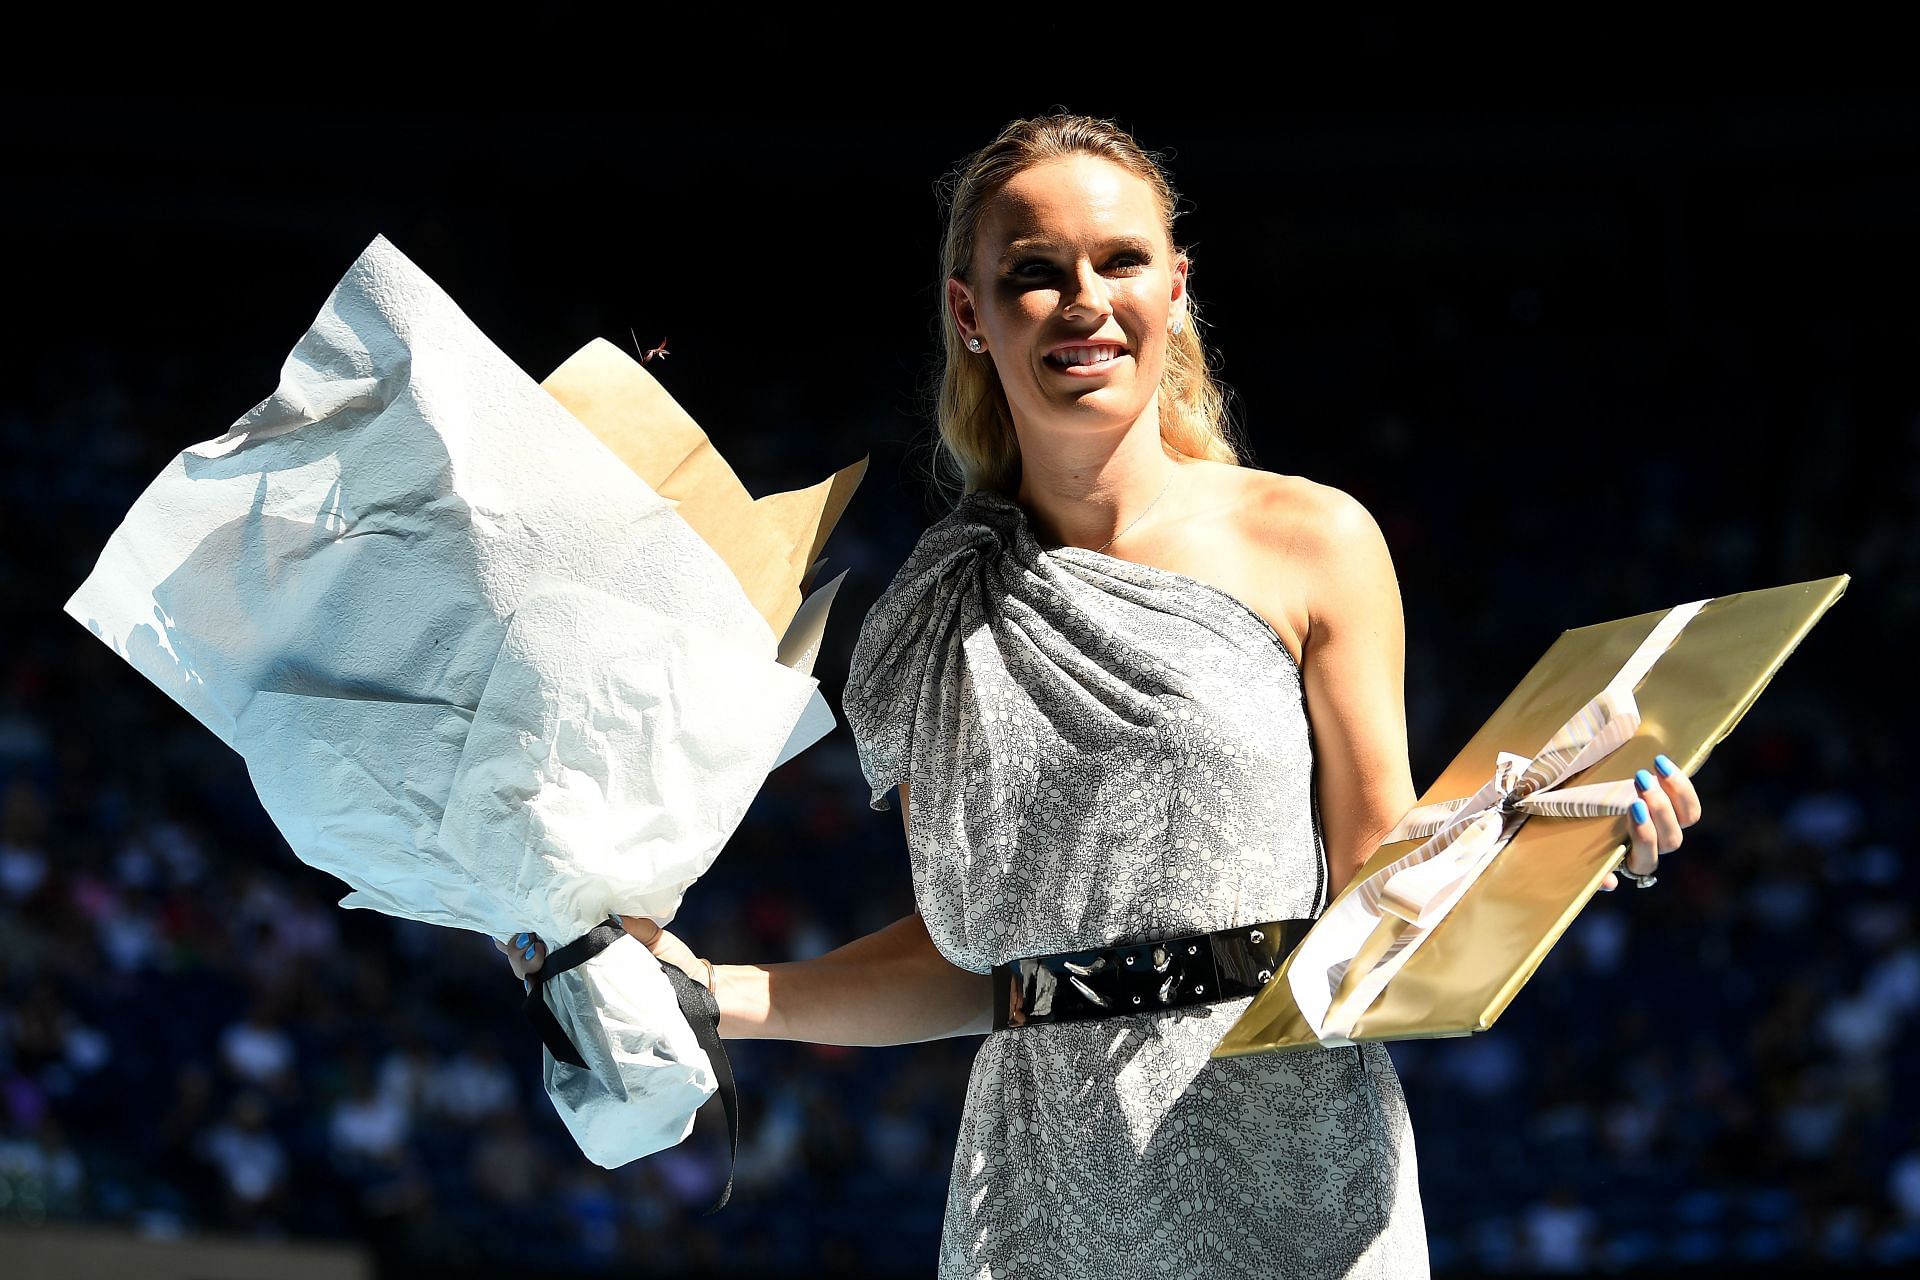 Wozniacki at the 2020 Australian Open